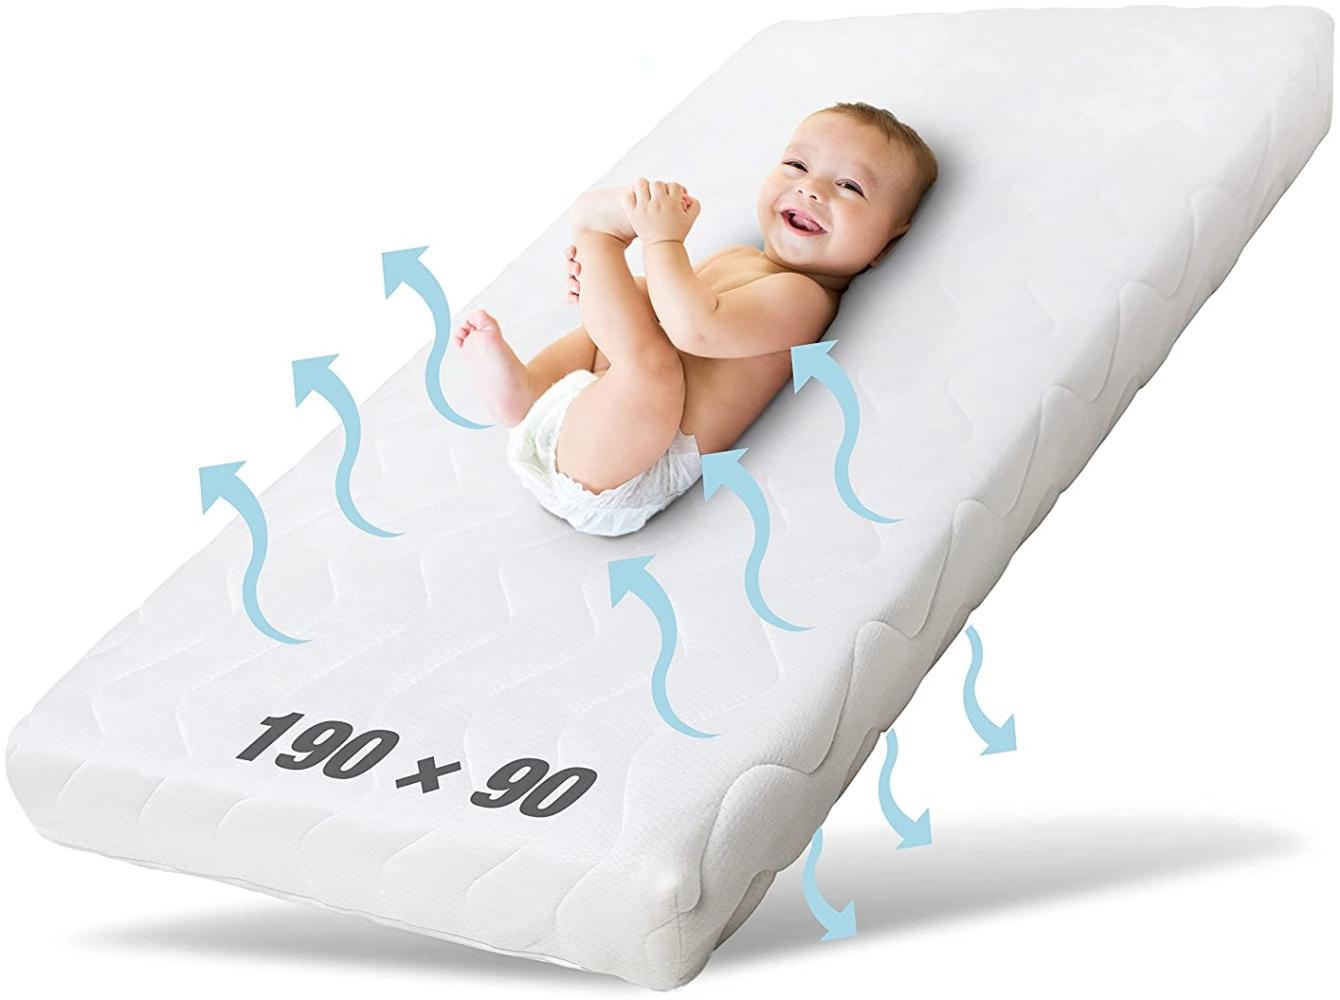 Ehrenkind® Kindermatratze Pur | Baby Matratze 90x190 | Babymatratze 90x190 aus hochwertigem Schaum und Hygienebezug Bild 1